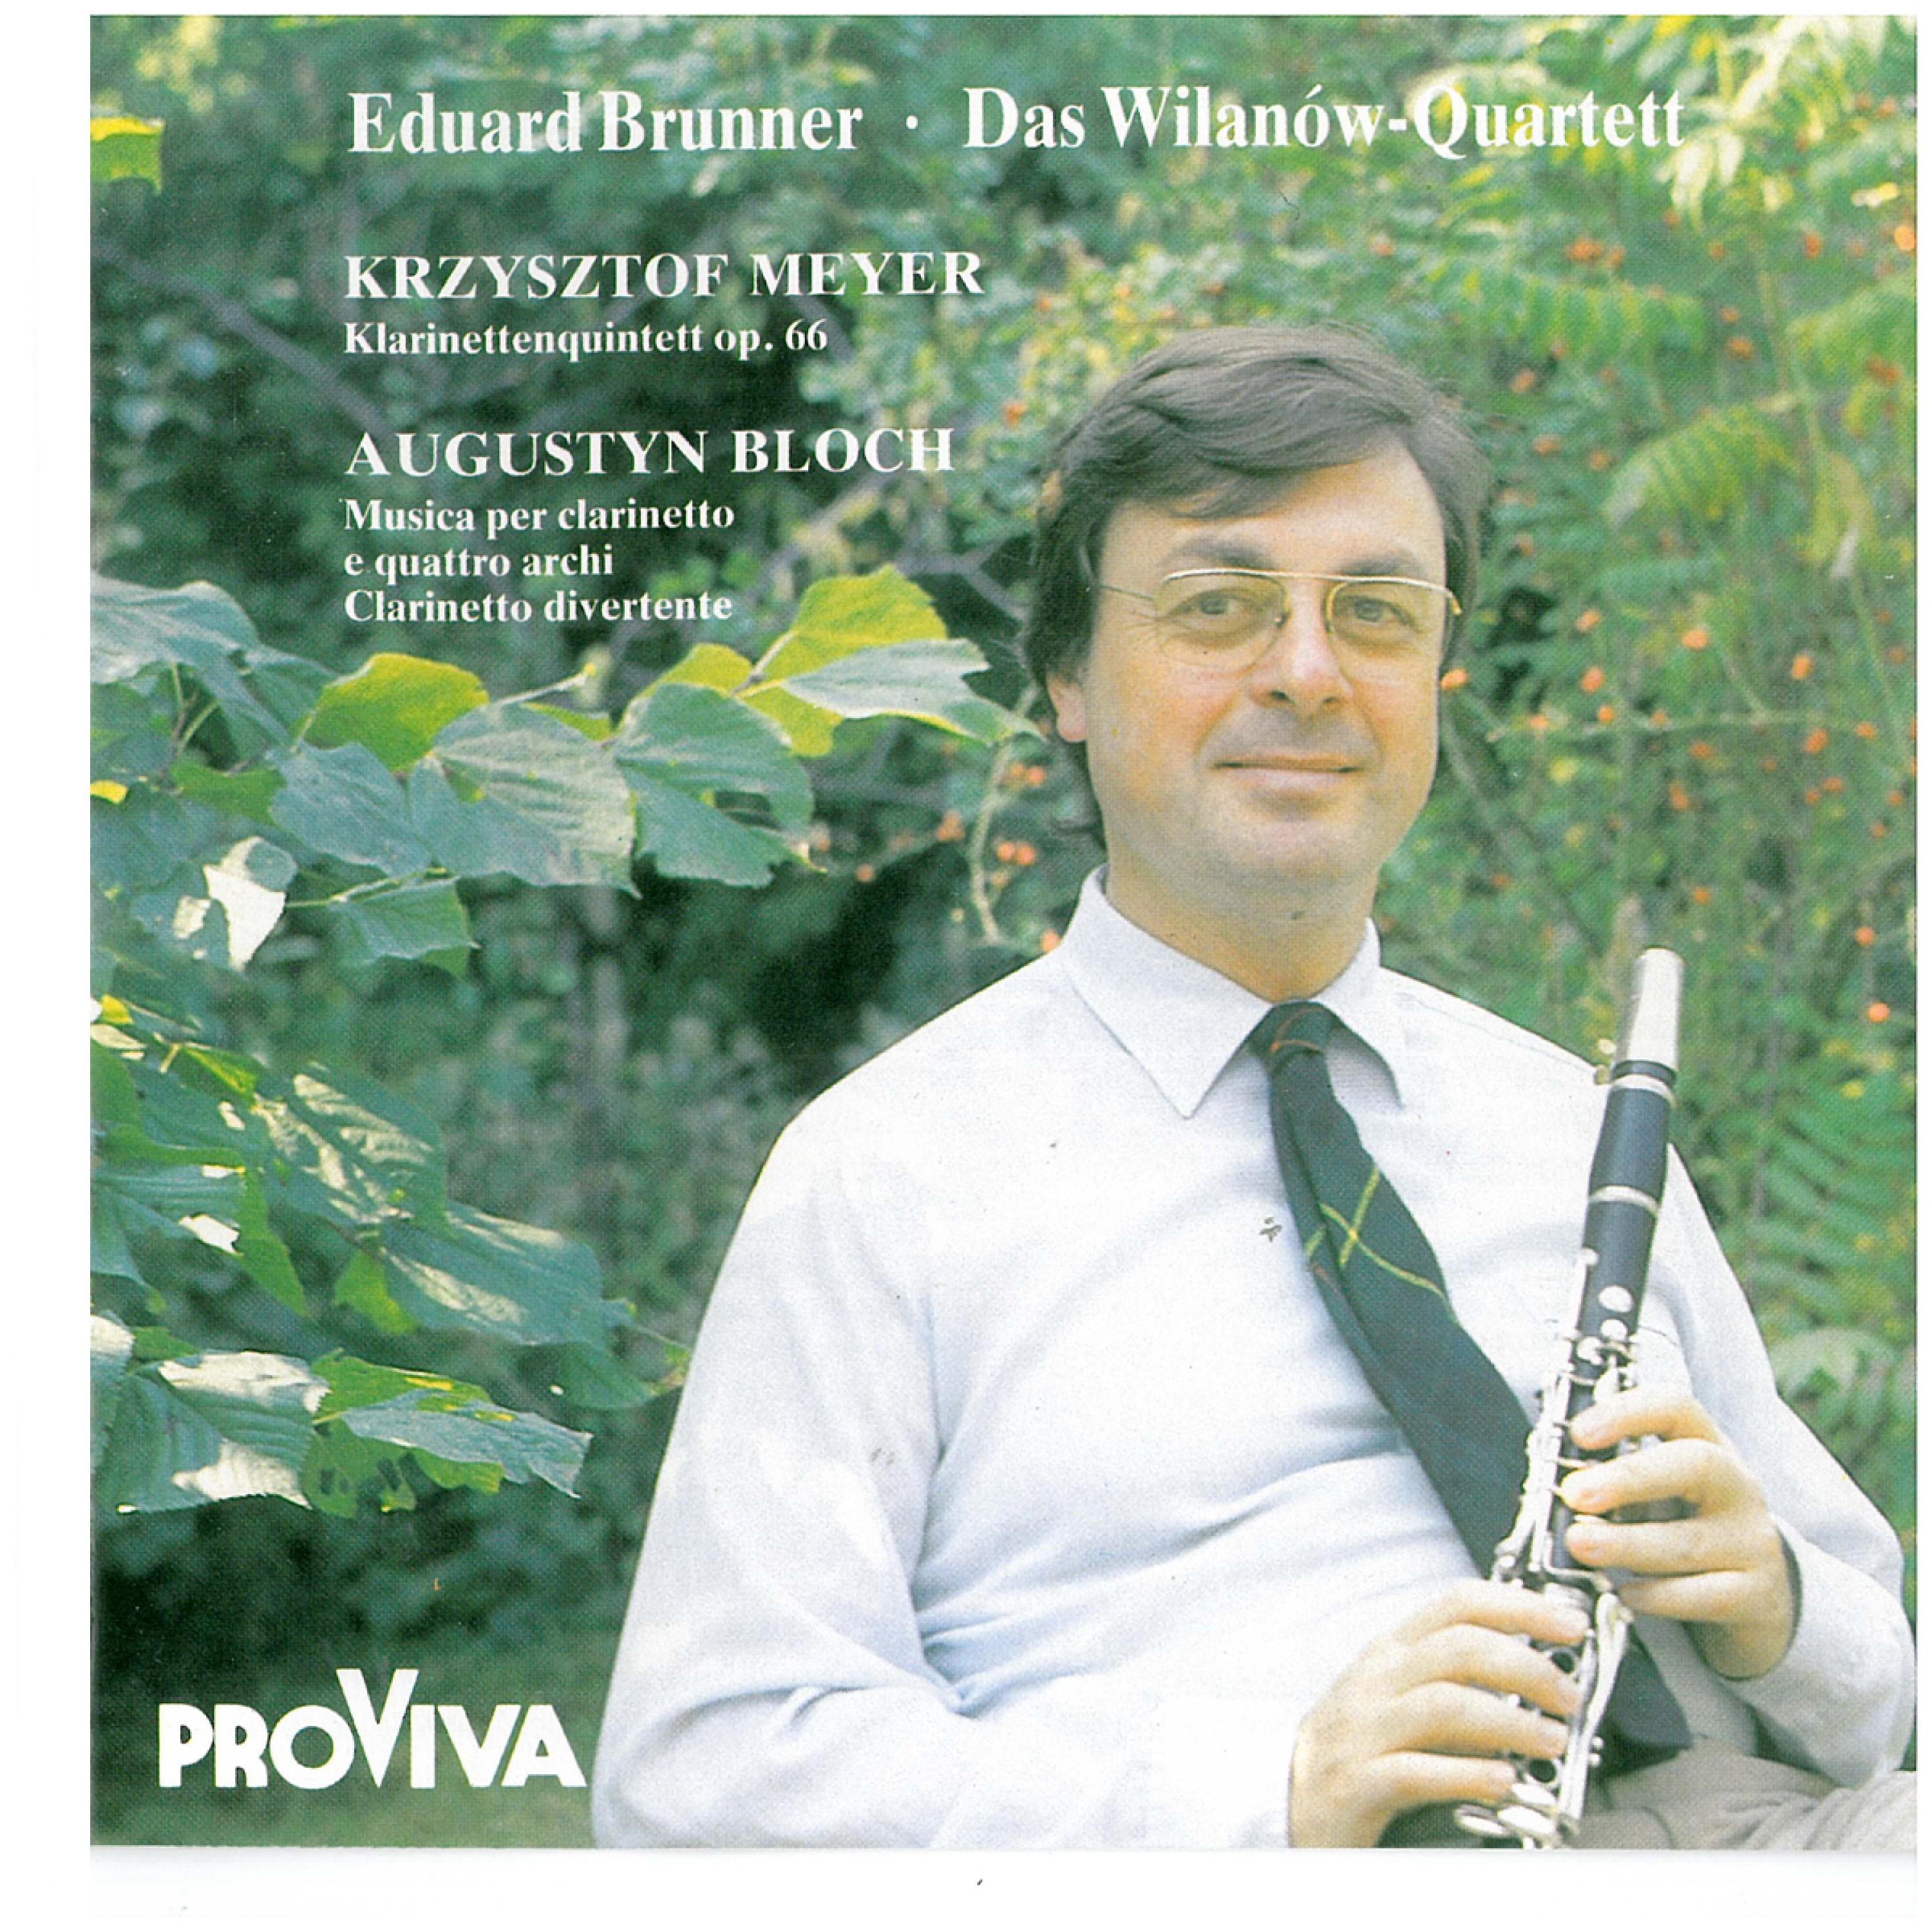 Eduard Brunner - Klarinettenquintett, Op. 66 - Con Moto